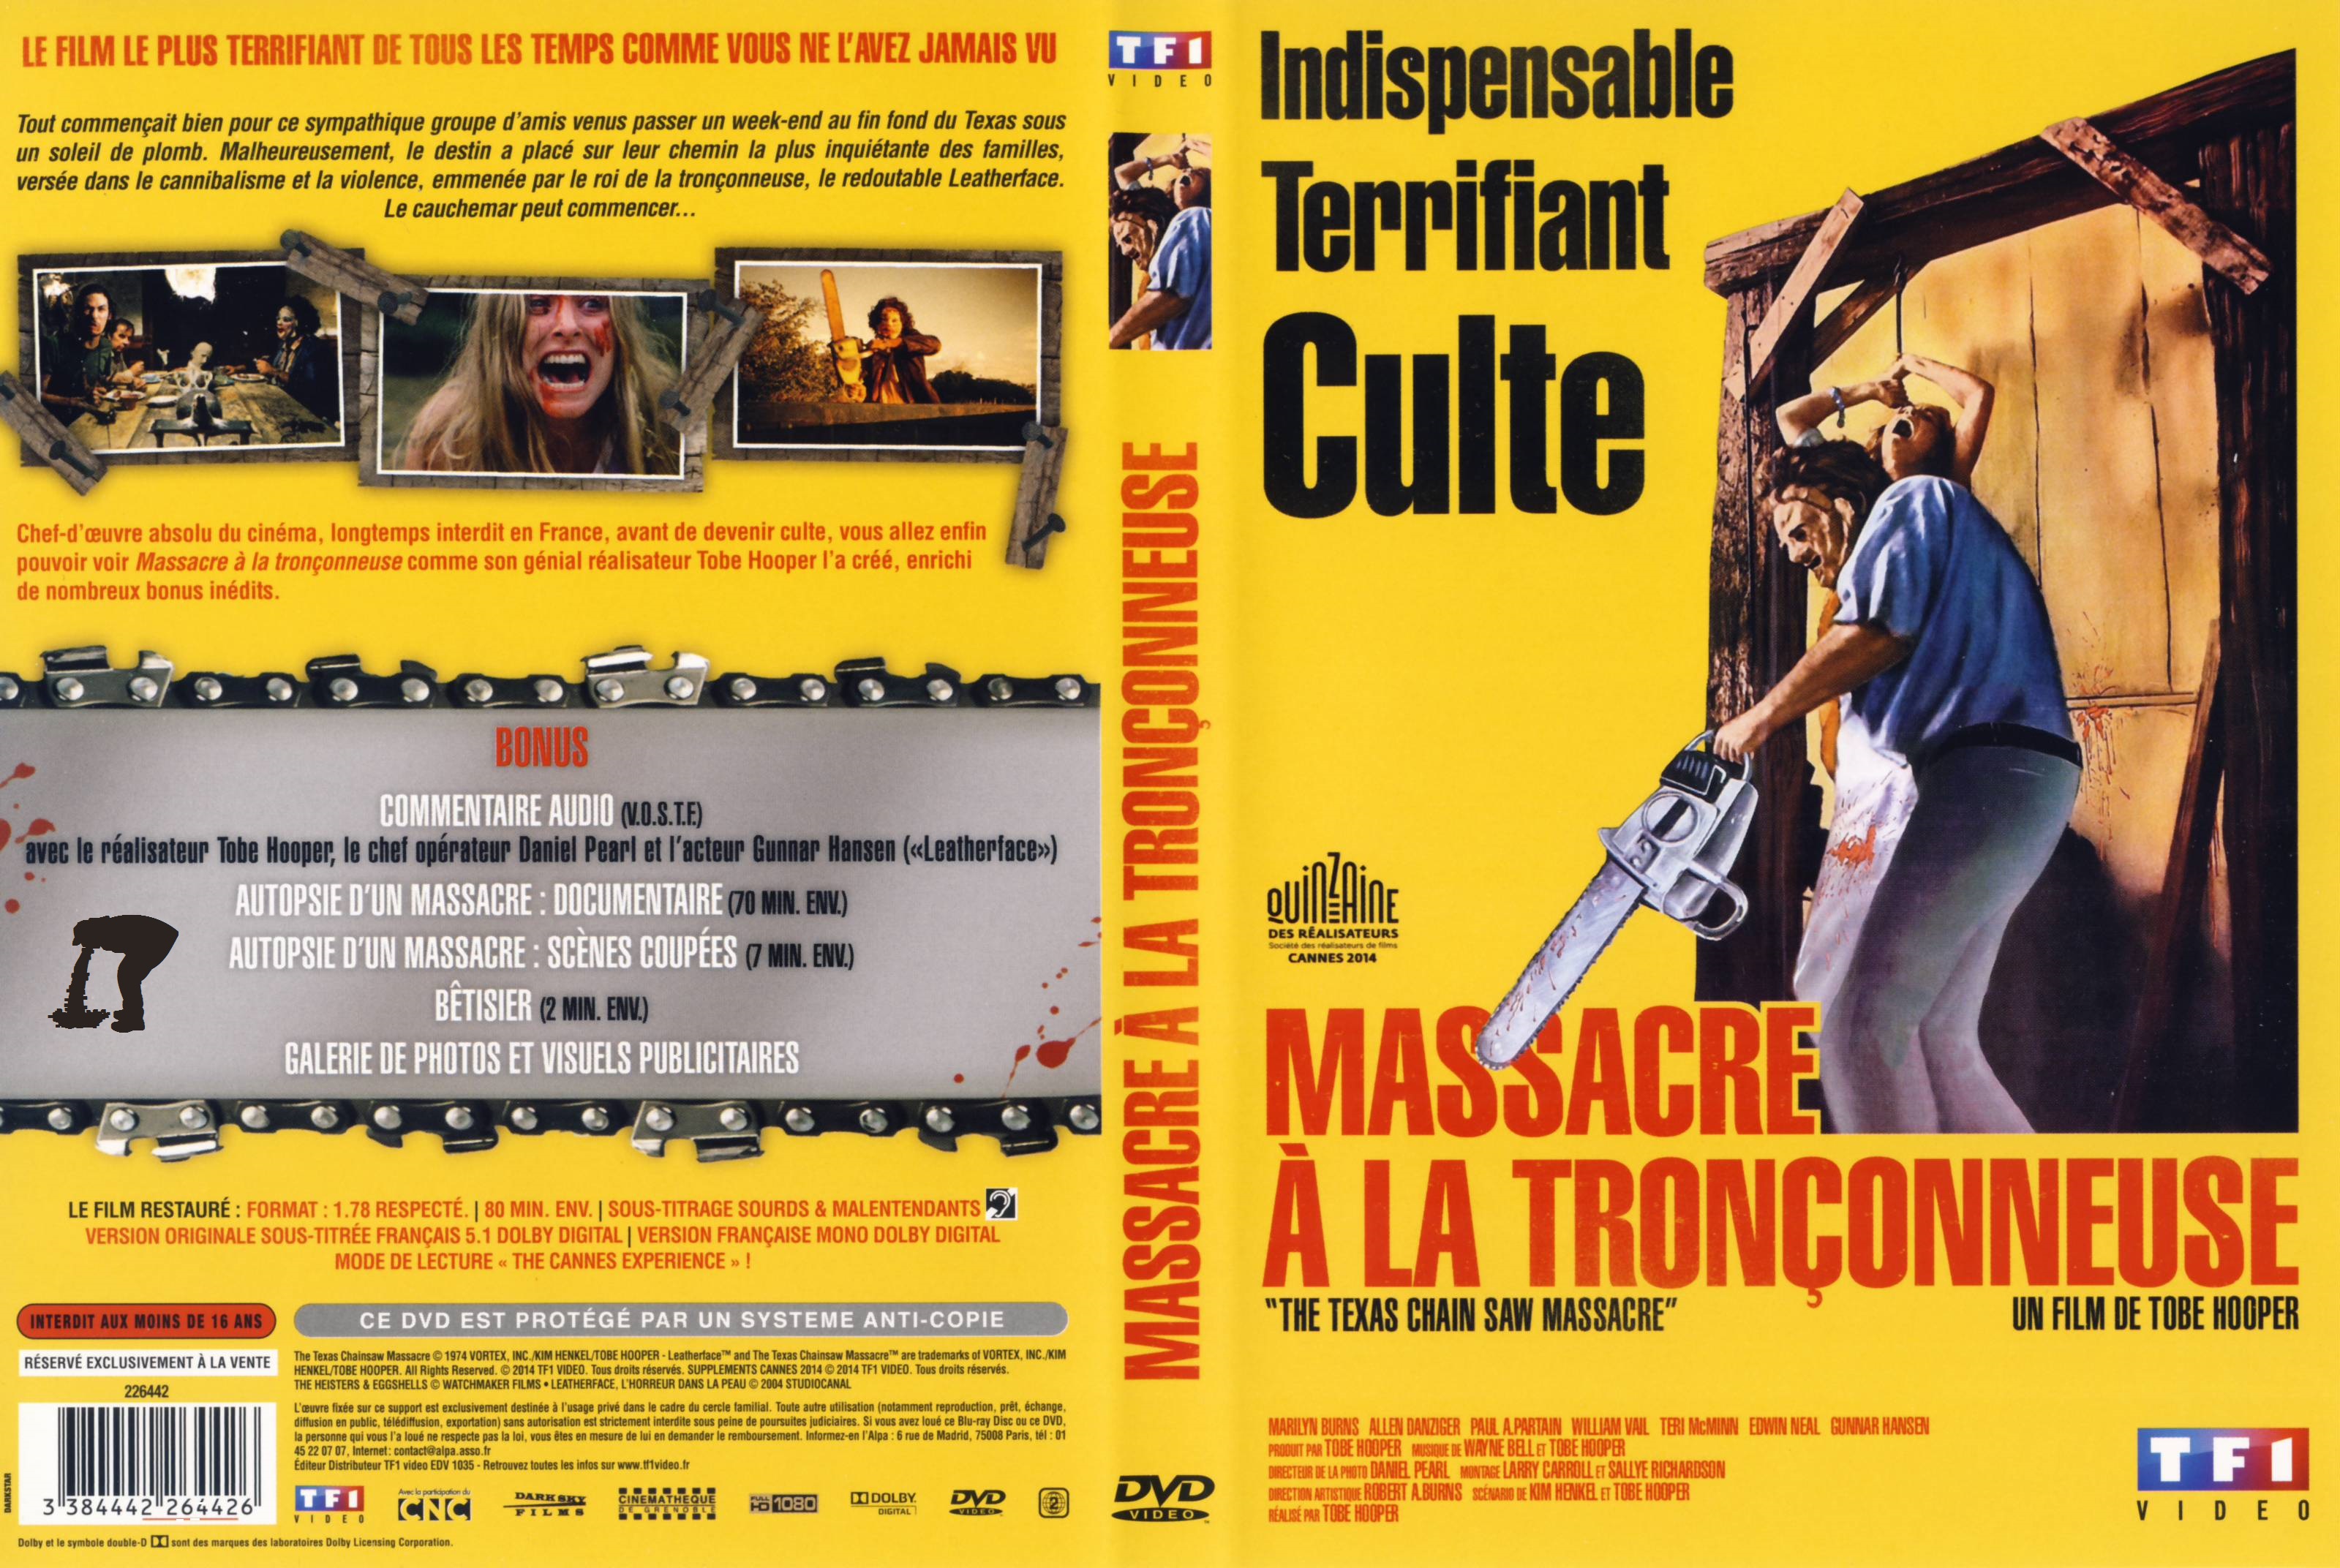 Jaquette DVD Massacre  la tronconneuse v2